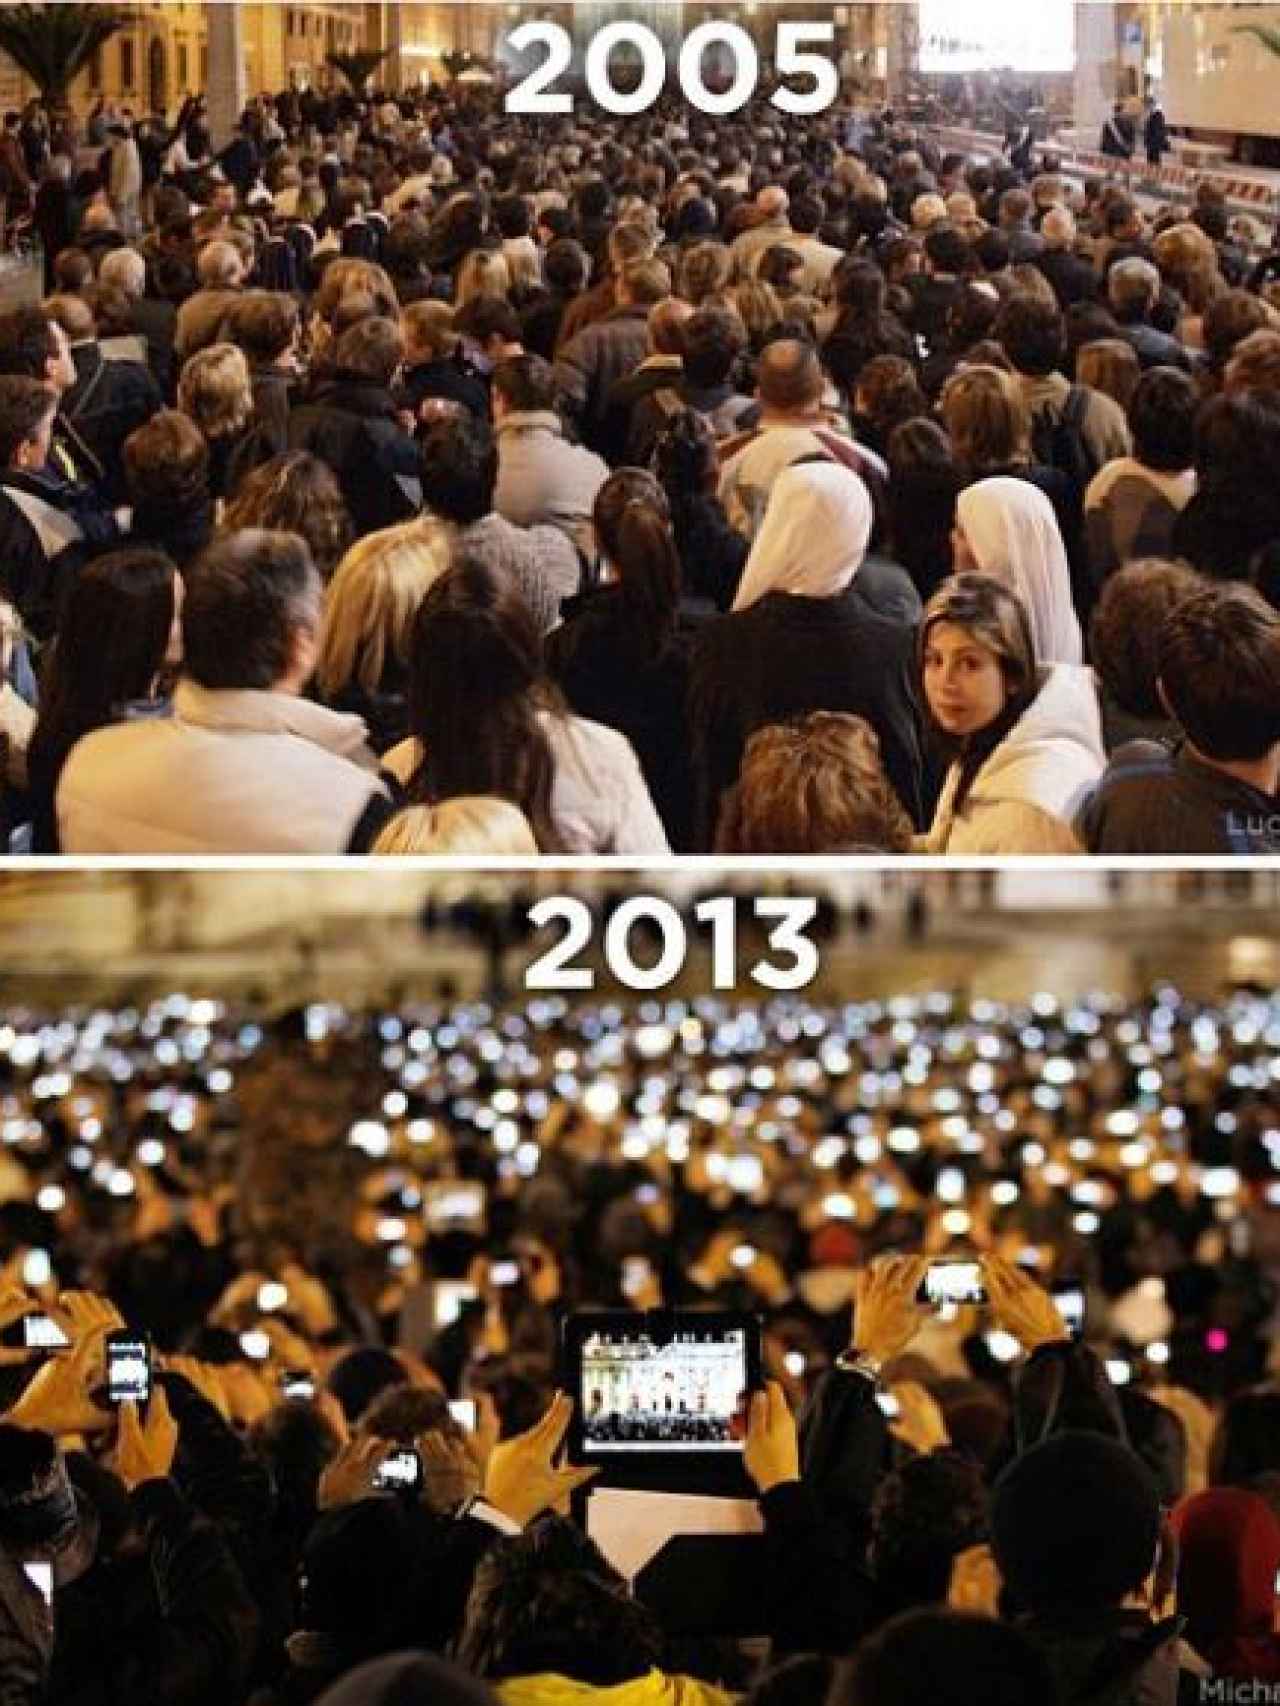 Comparación de una imagen de 2005 y otra de 2013